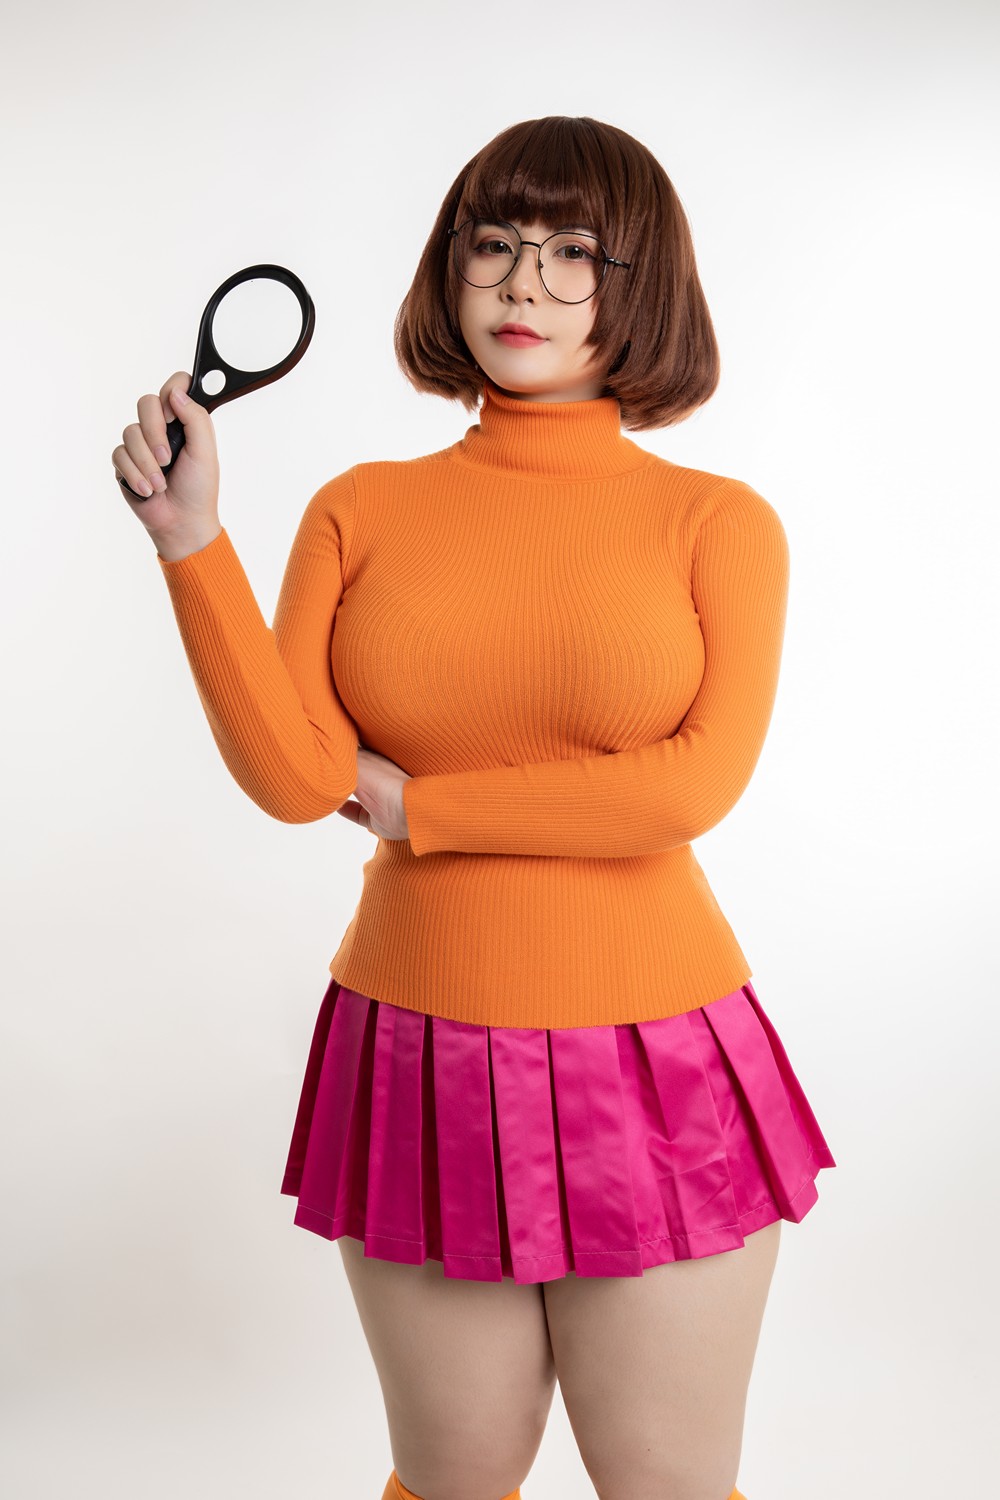 UyUy - Velma - COSPLAY -